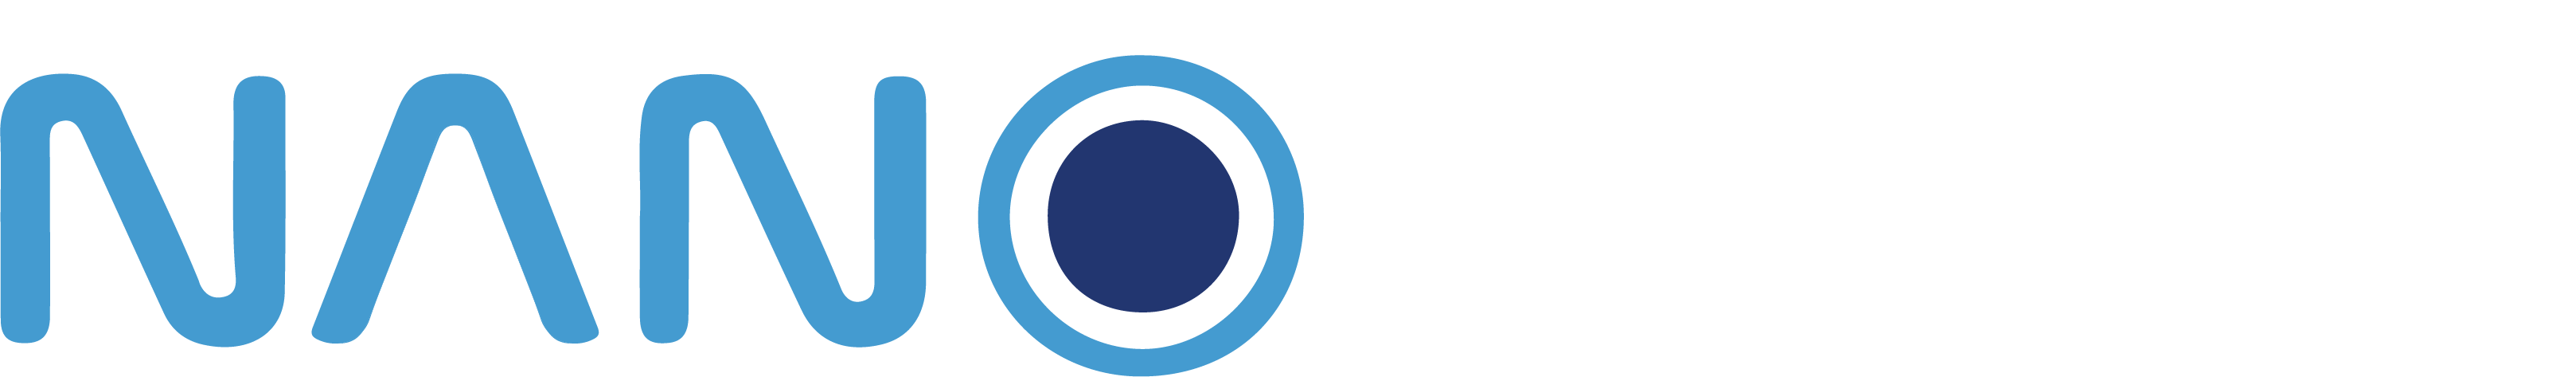 logo_nanoguru